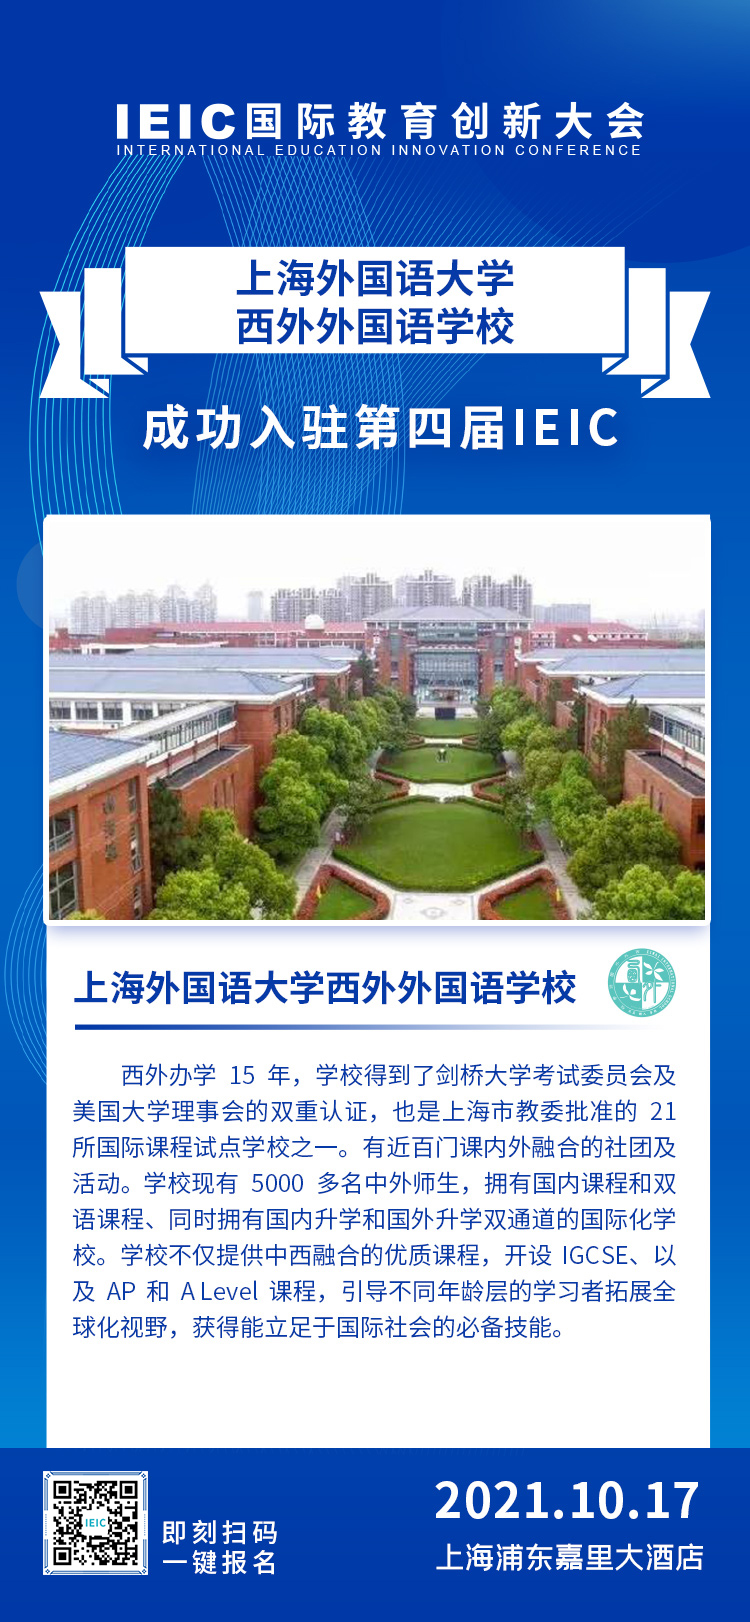 上海西外外国语学校|入驻参展2021年远播第四届IEIC国际教育创新大会